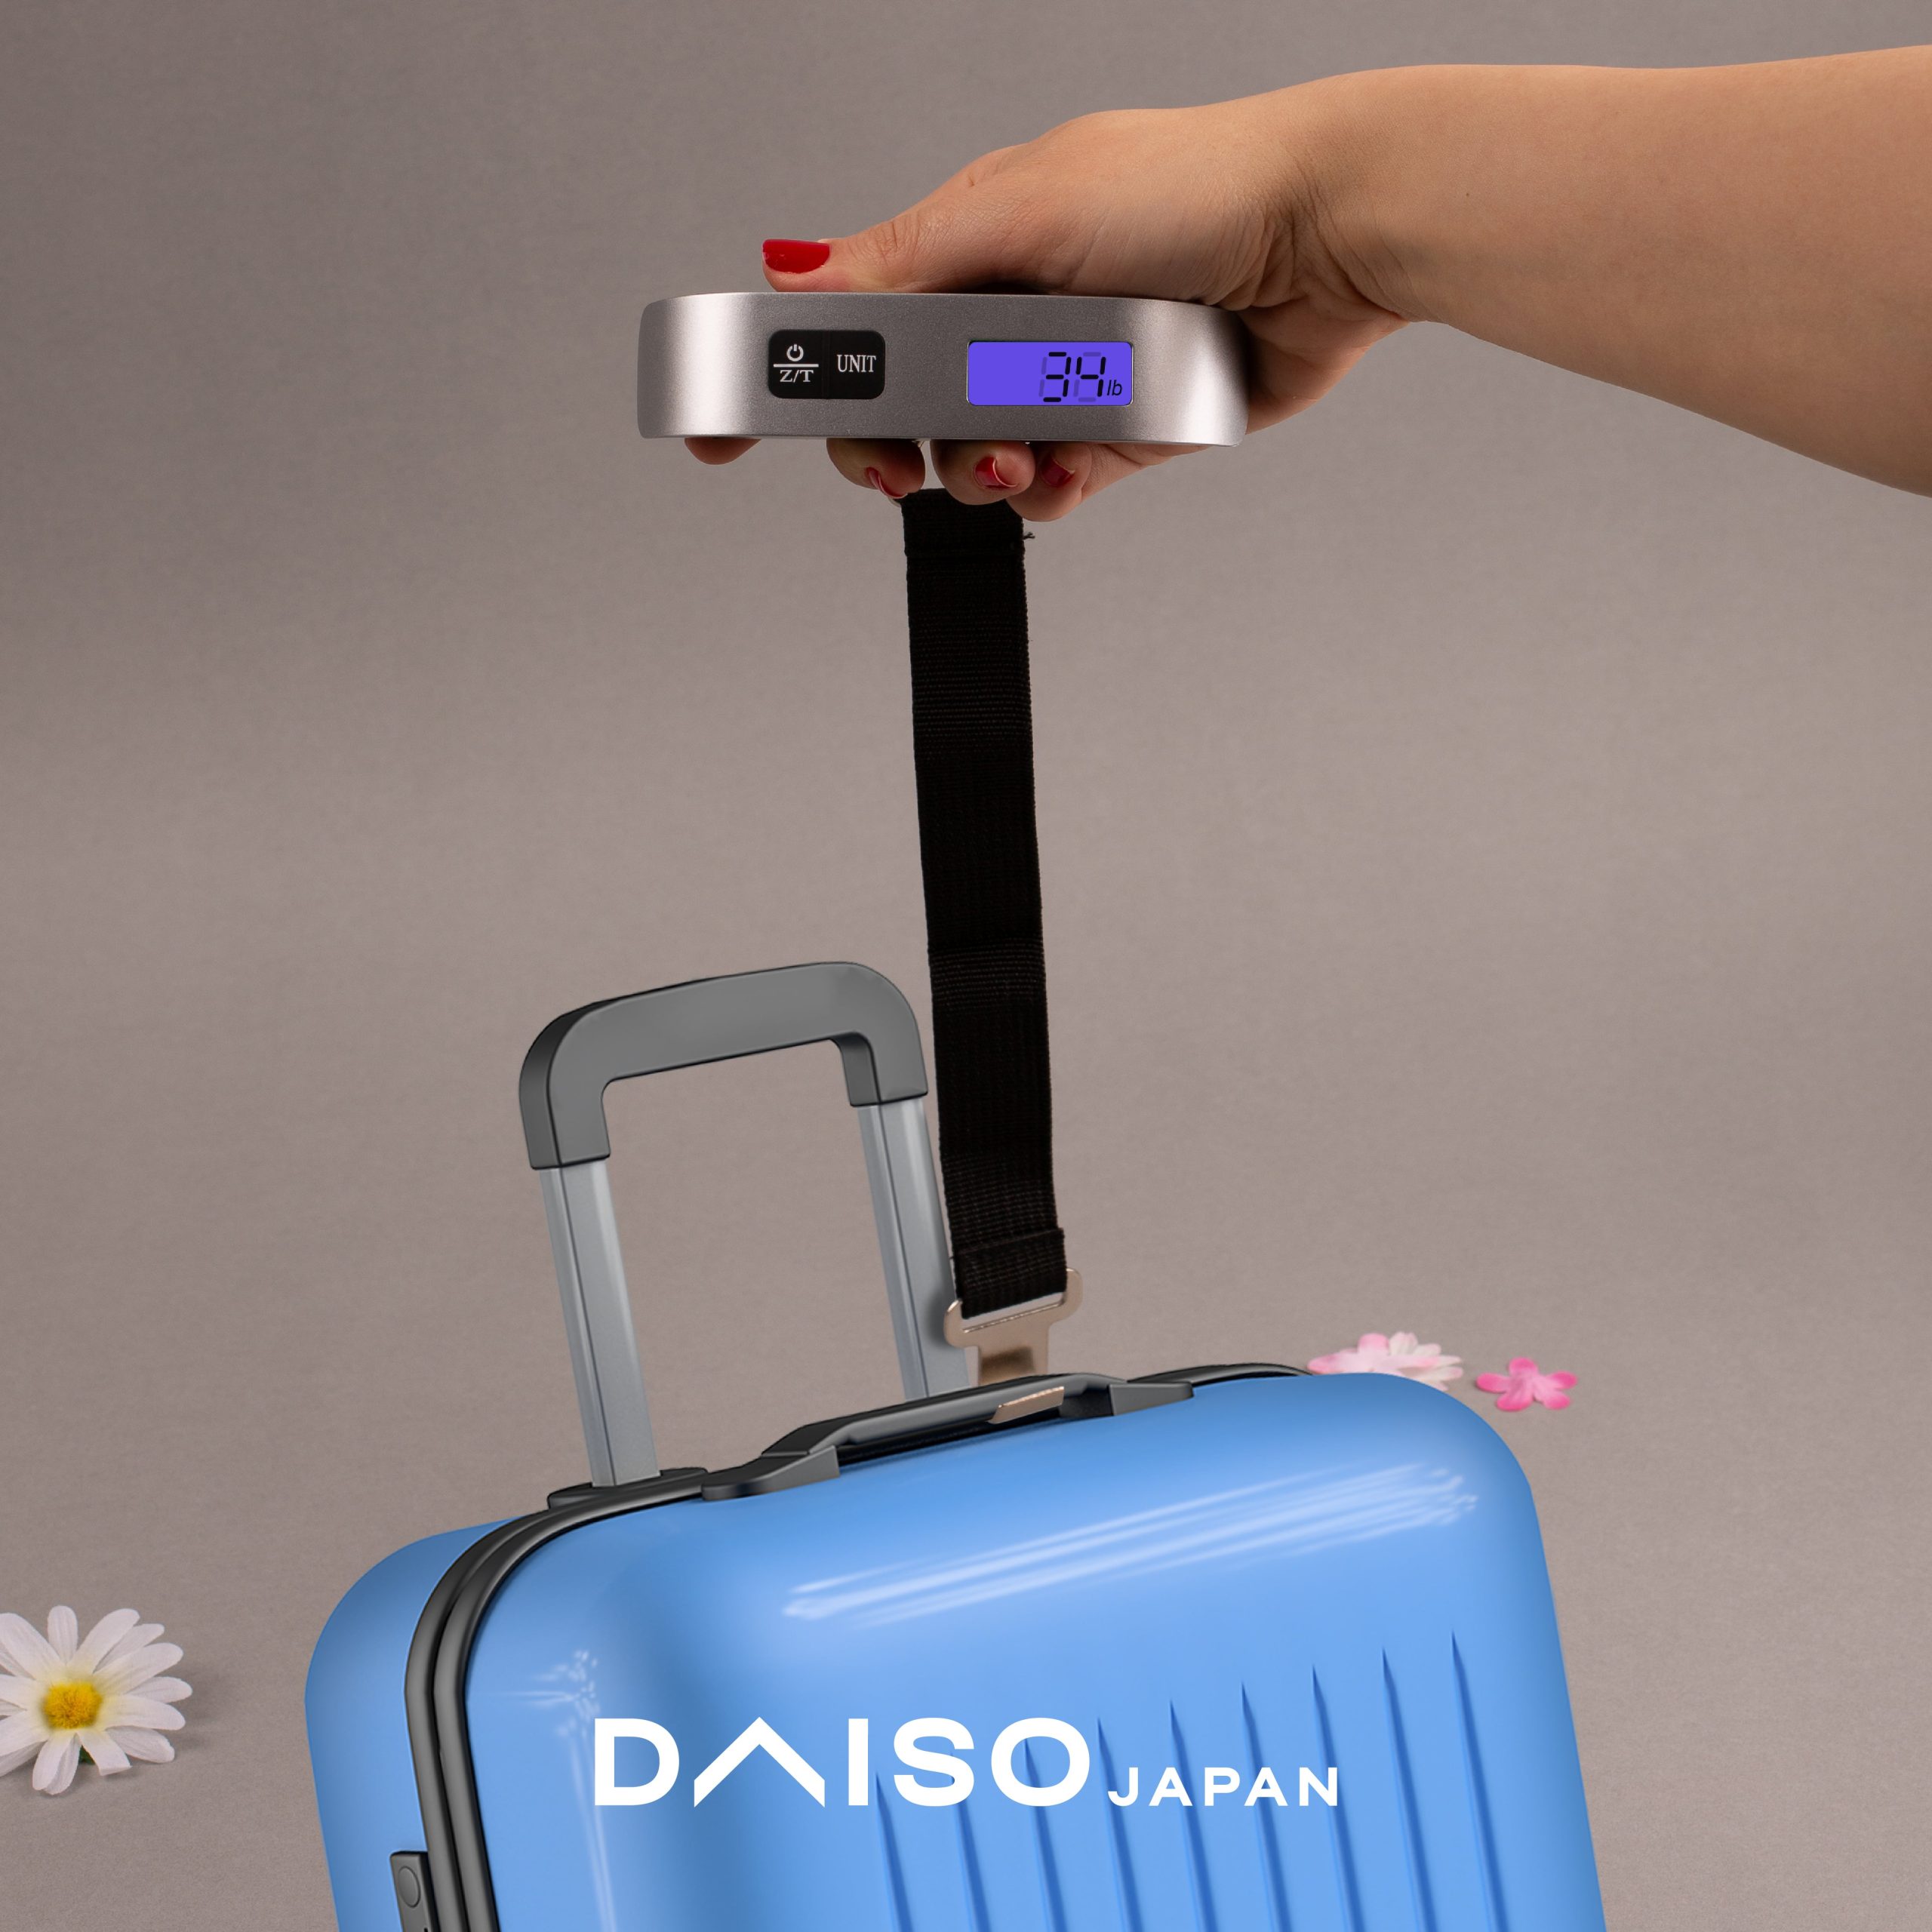 Daiso Japan - Digital Weight